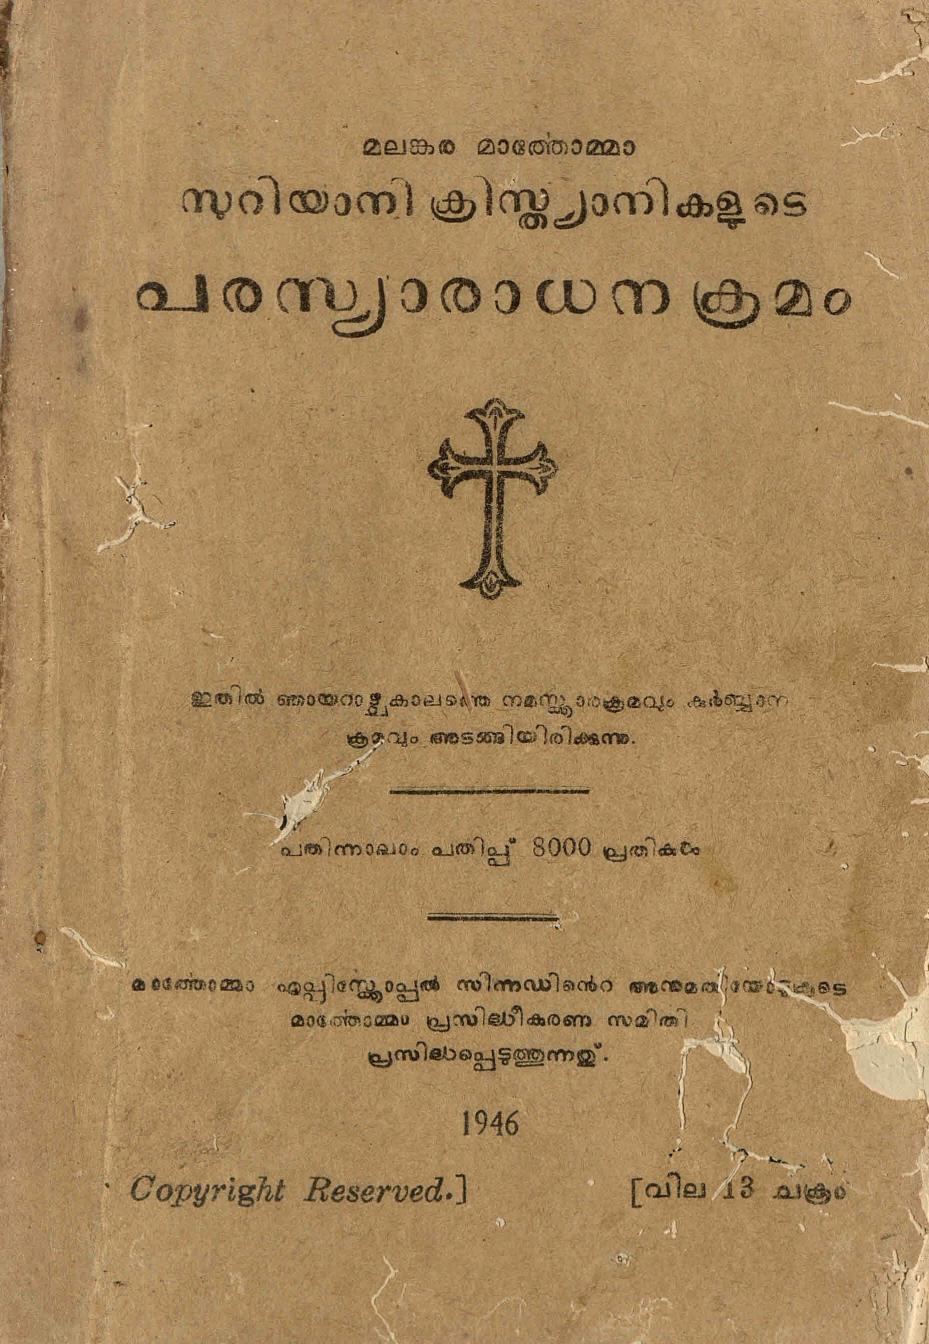 1946 - മലങ്കര മാർതോമ്മാ സുറിയാനി ക്രിസ്ത്യാനികളുടെ പരസ്യാരാധനക്രമം